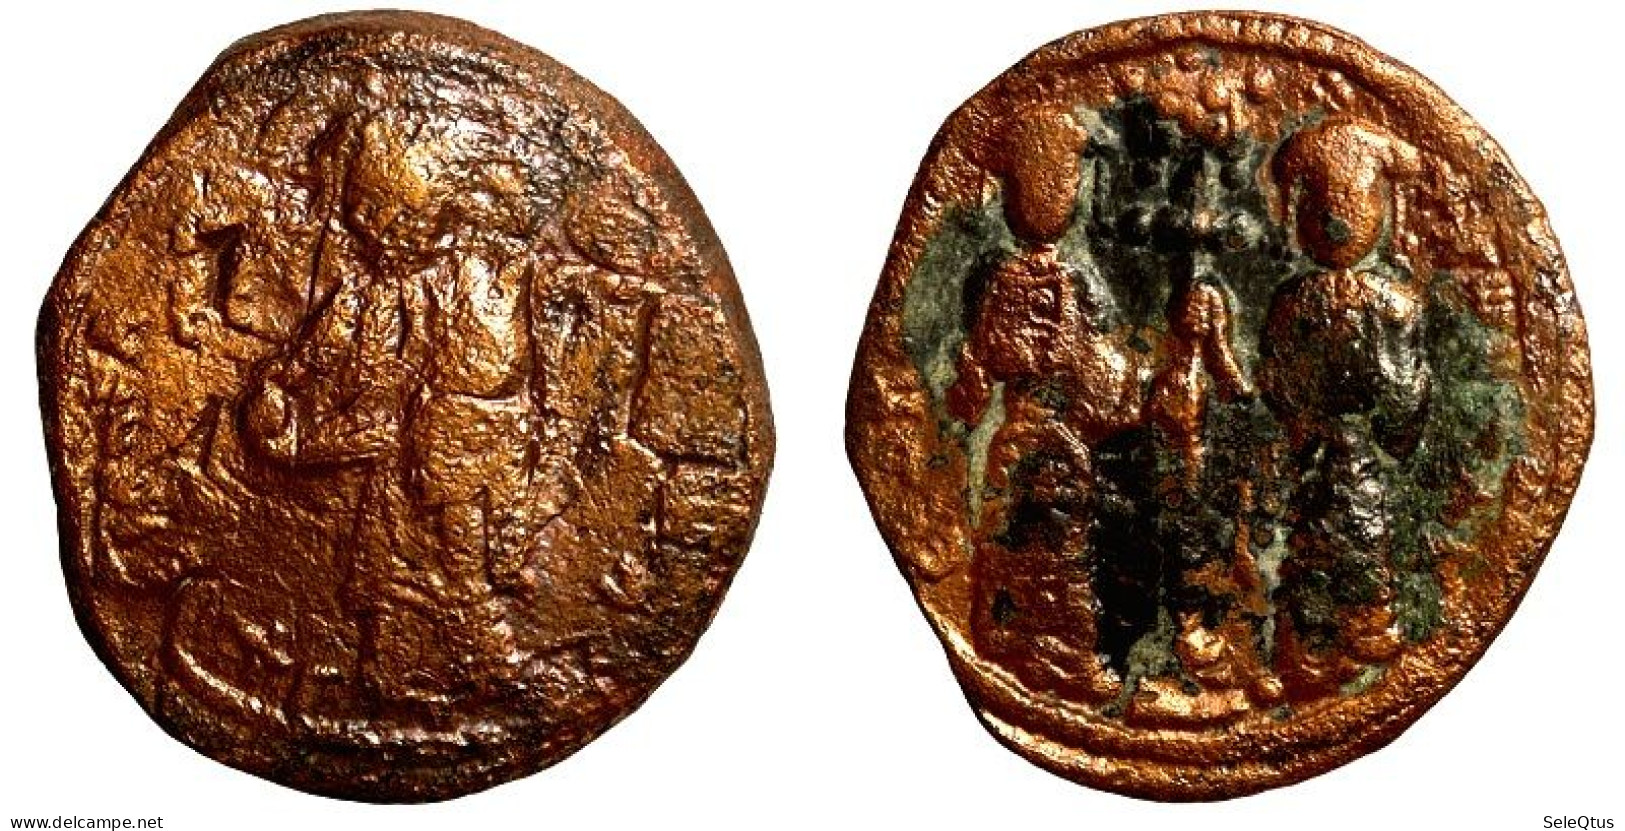 Monedas Antiguas - Ancient Coins (00109-002-1401) - Bizantine